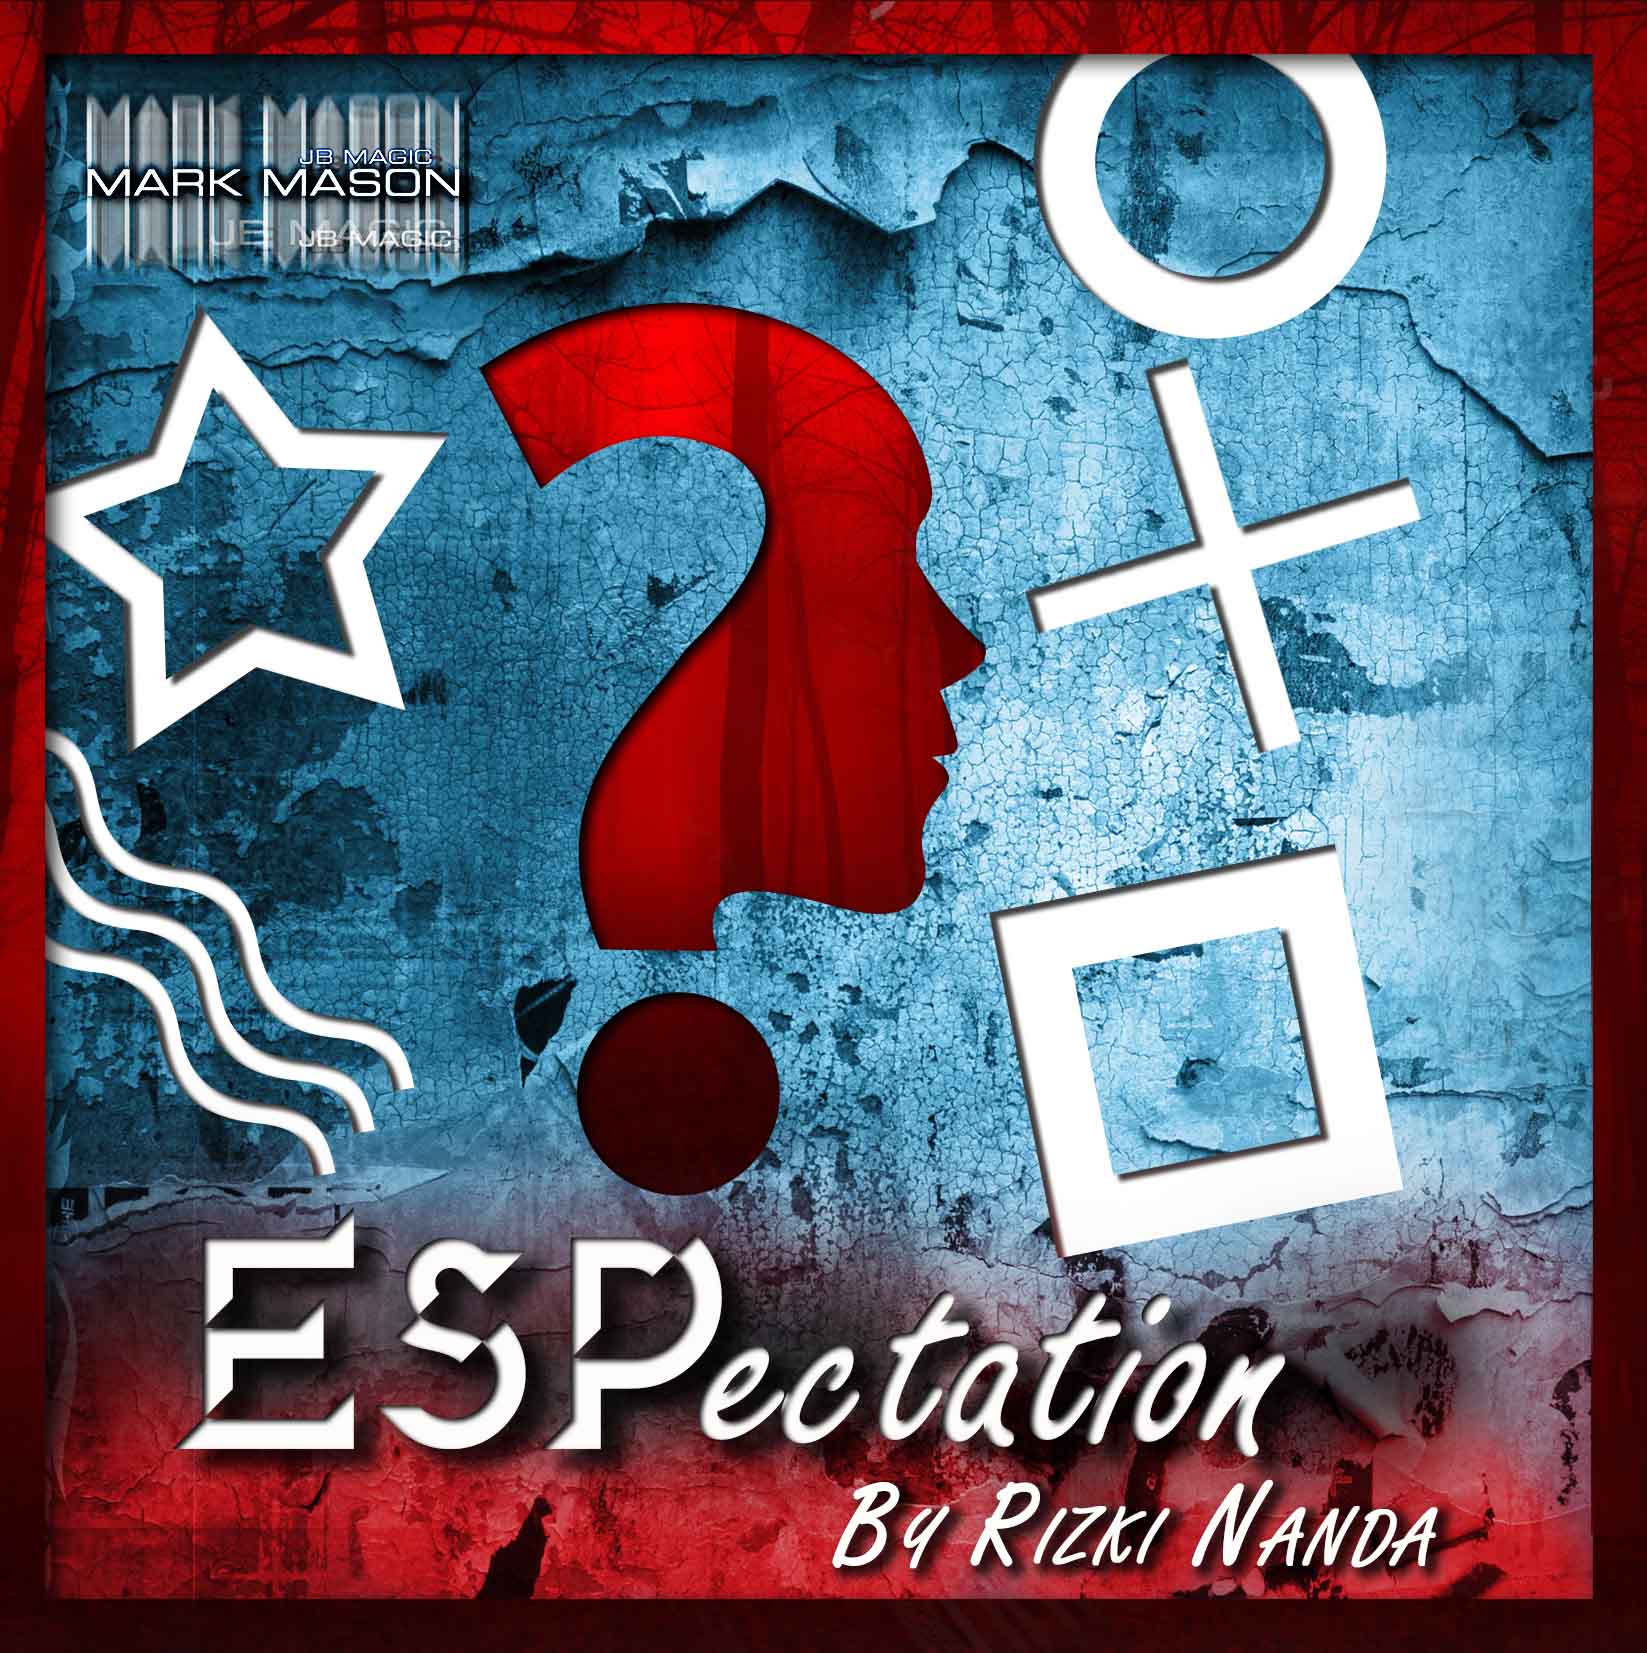 ESP-Ectation by Rizki Nanda (4216-w6)